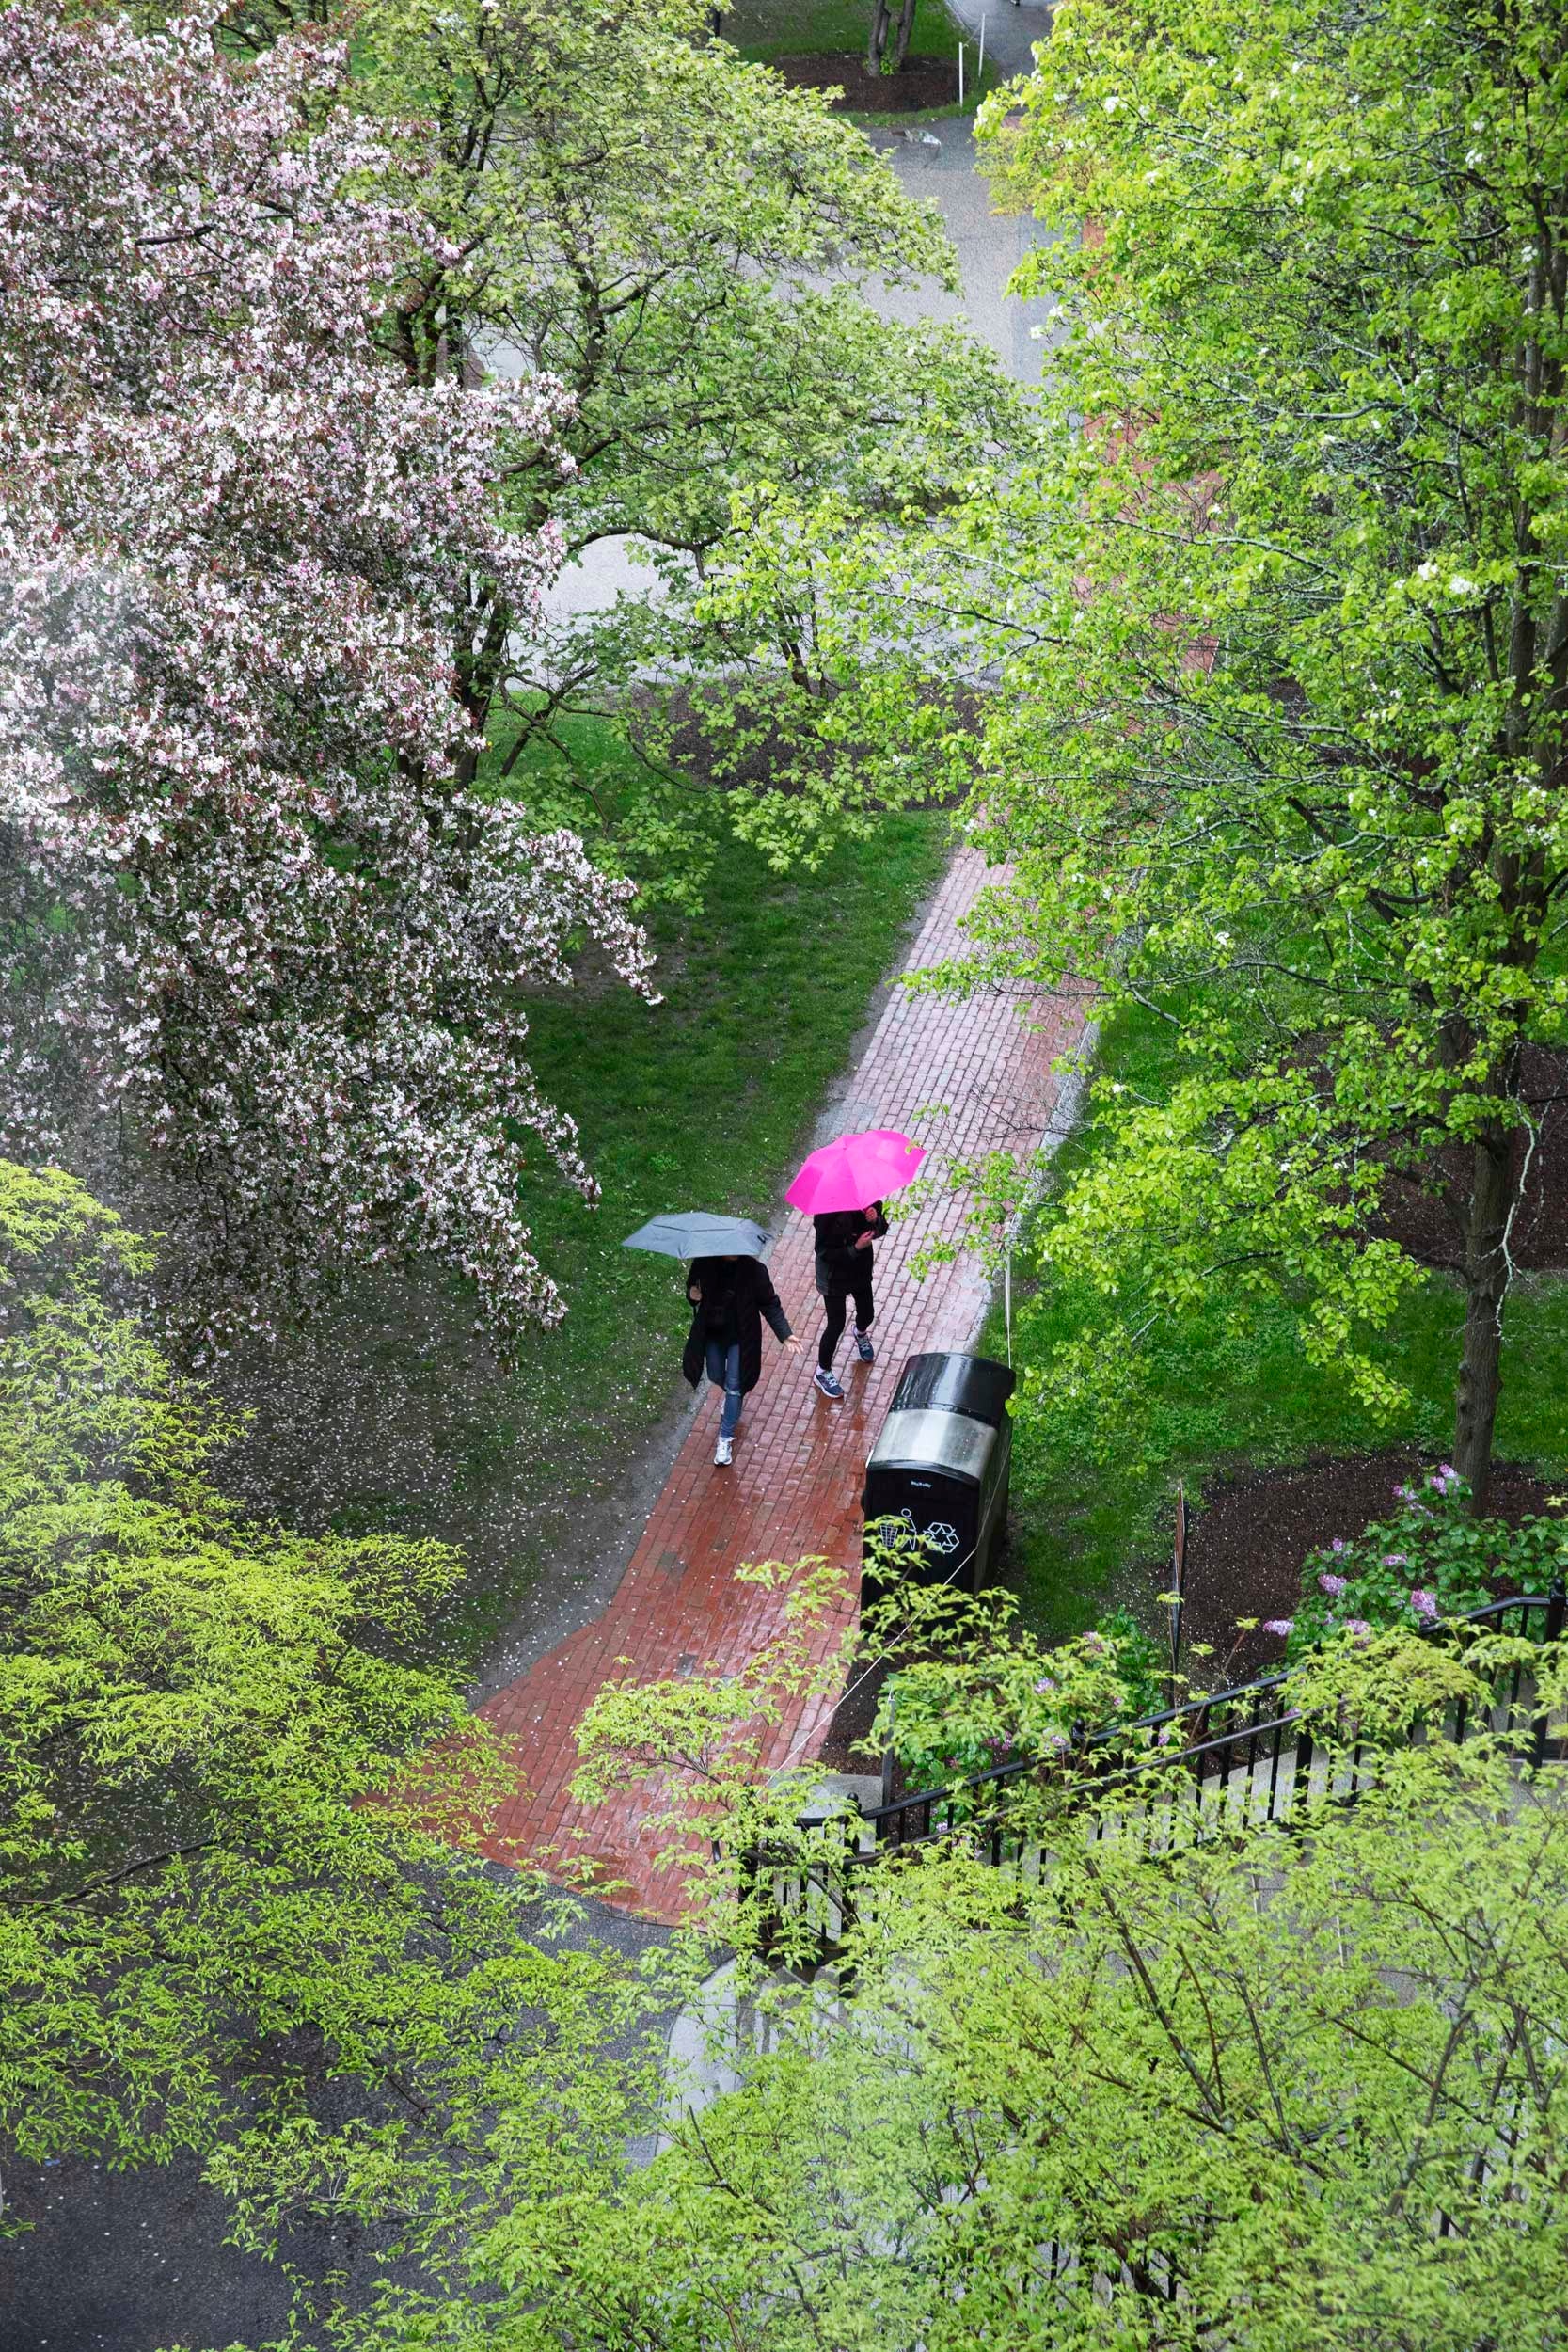 People with umbrellas pass beneath trees.